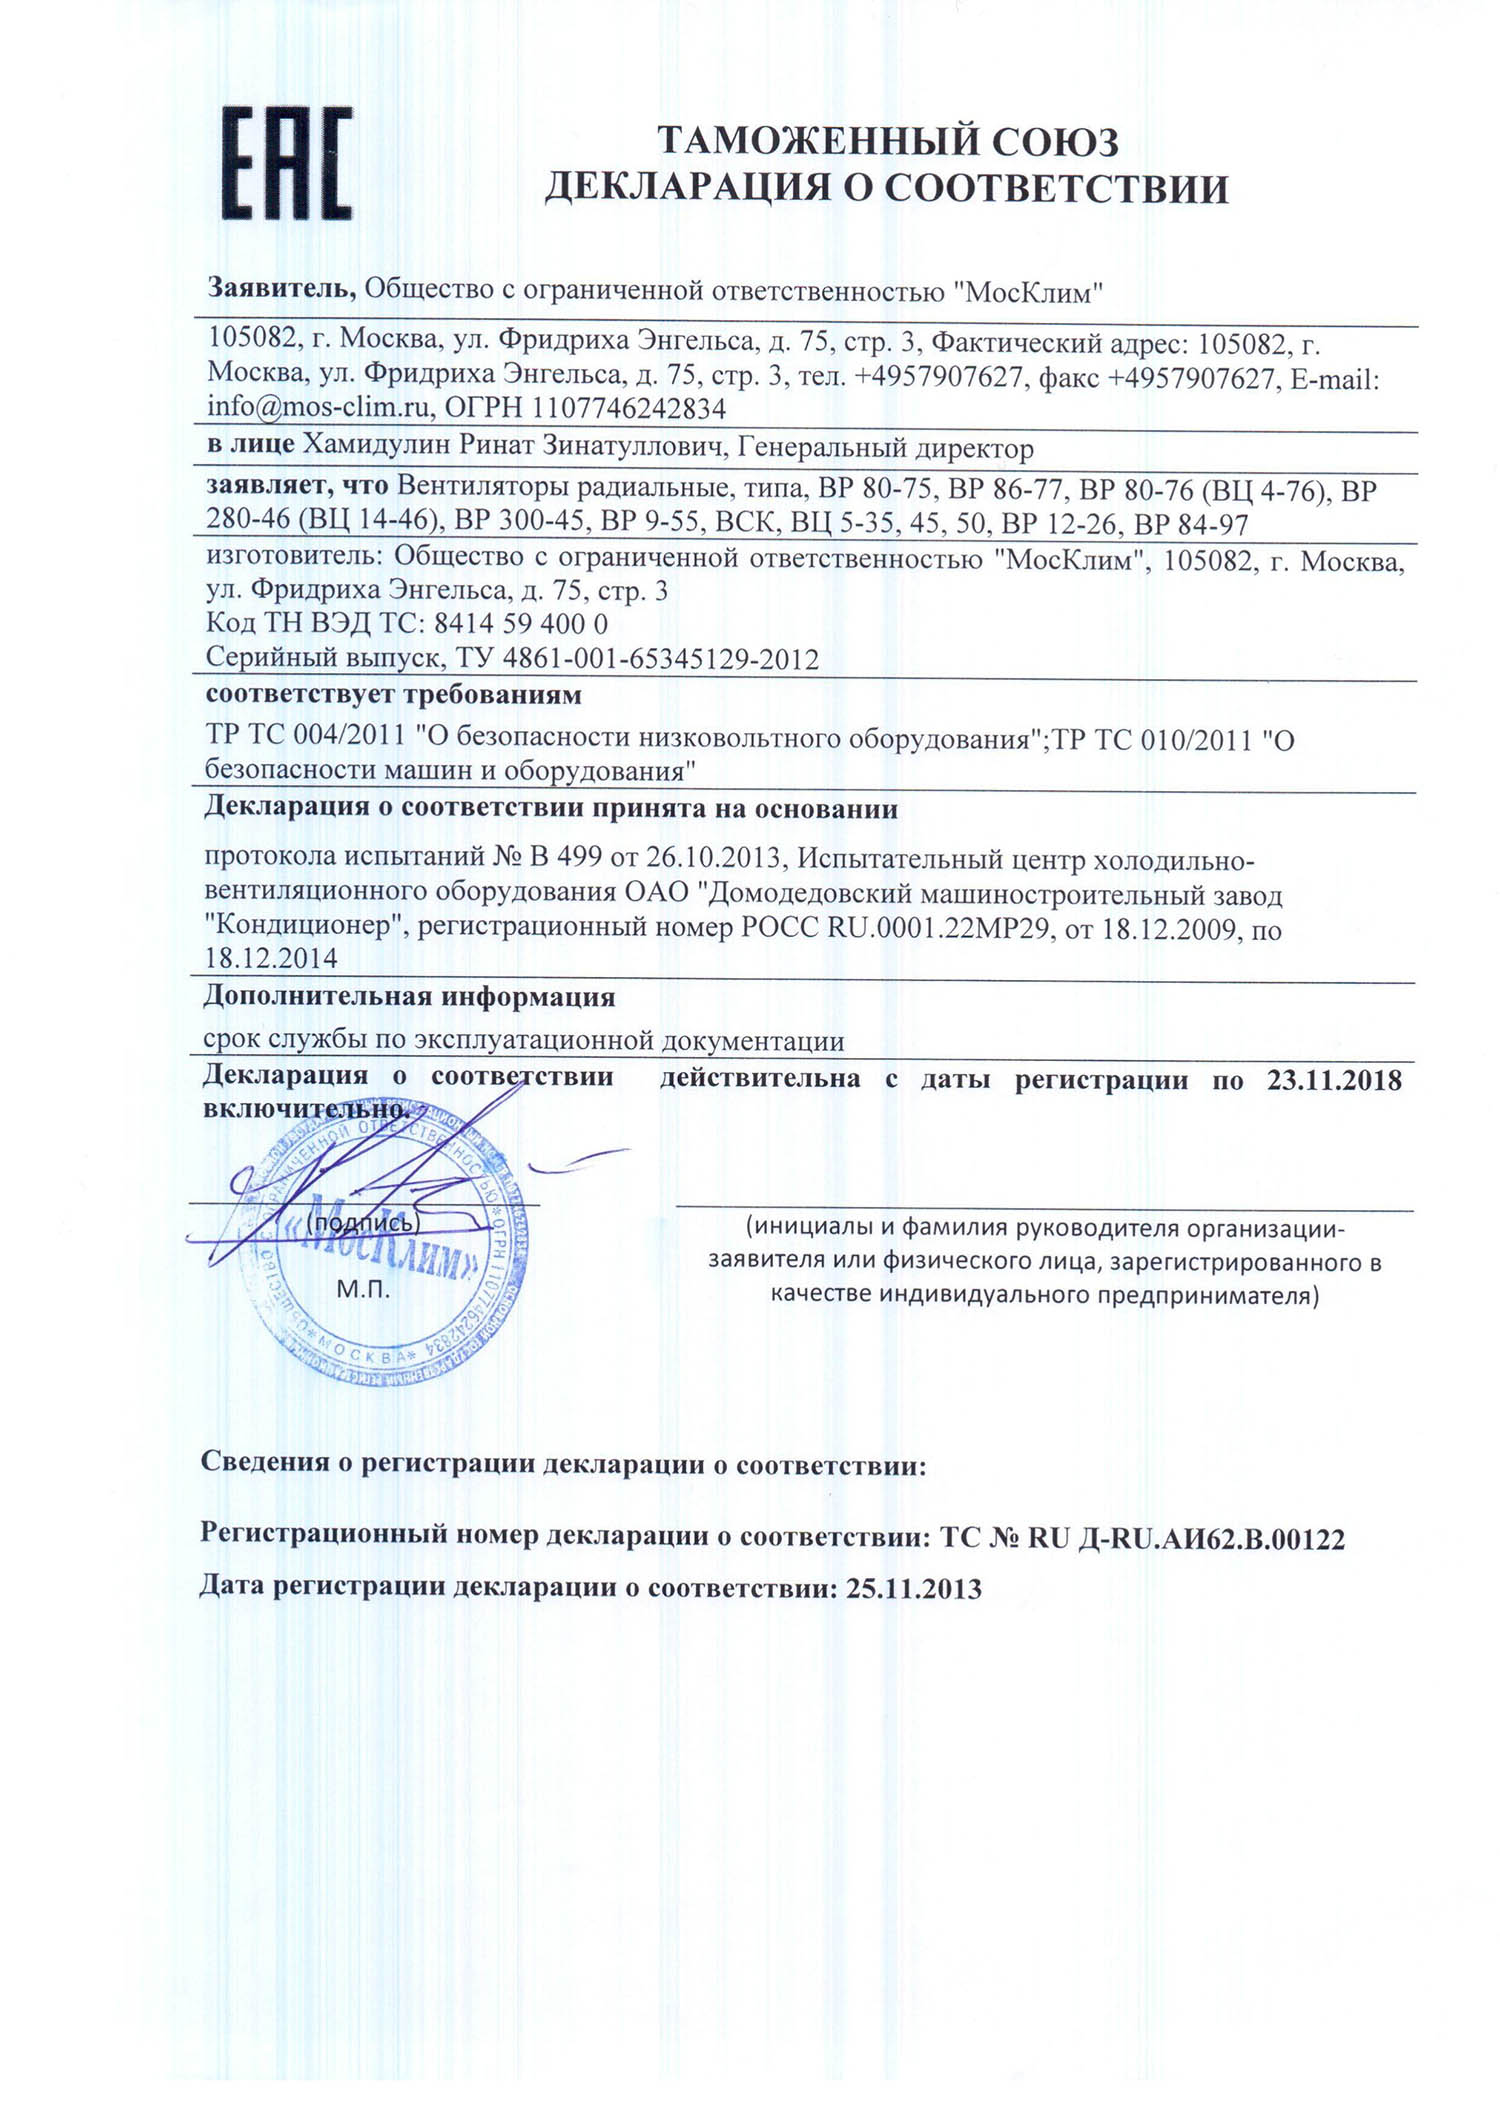 Декларация о соответствии ВР-80-75. ВР-280-46 № RU Д-RU.АИ62.В.00122 от 25.11.2013